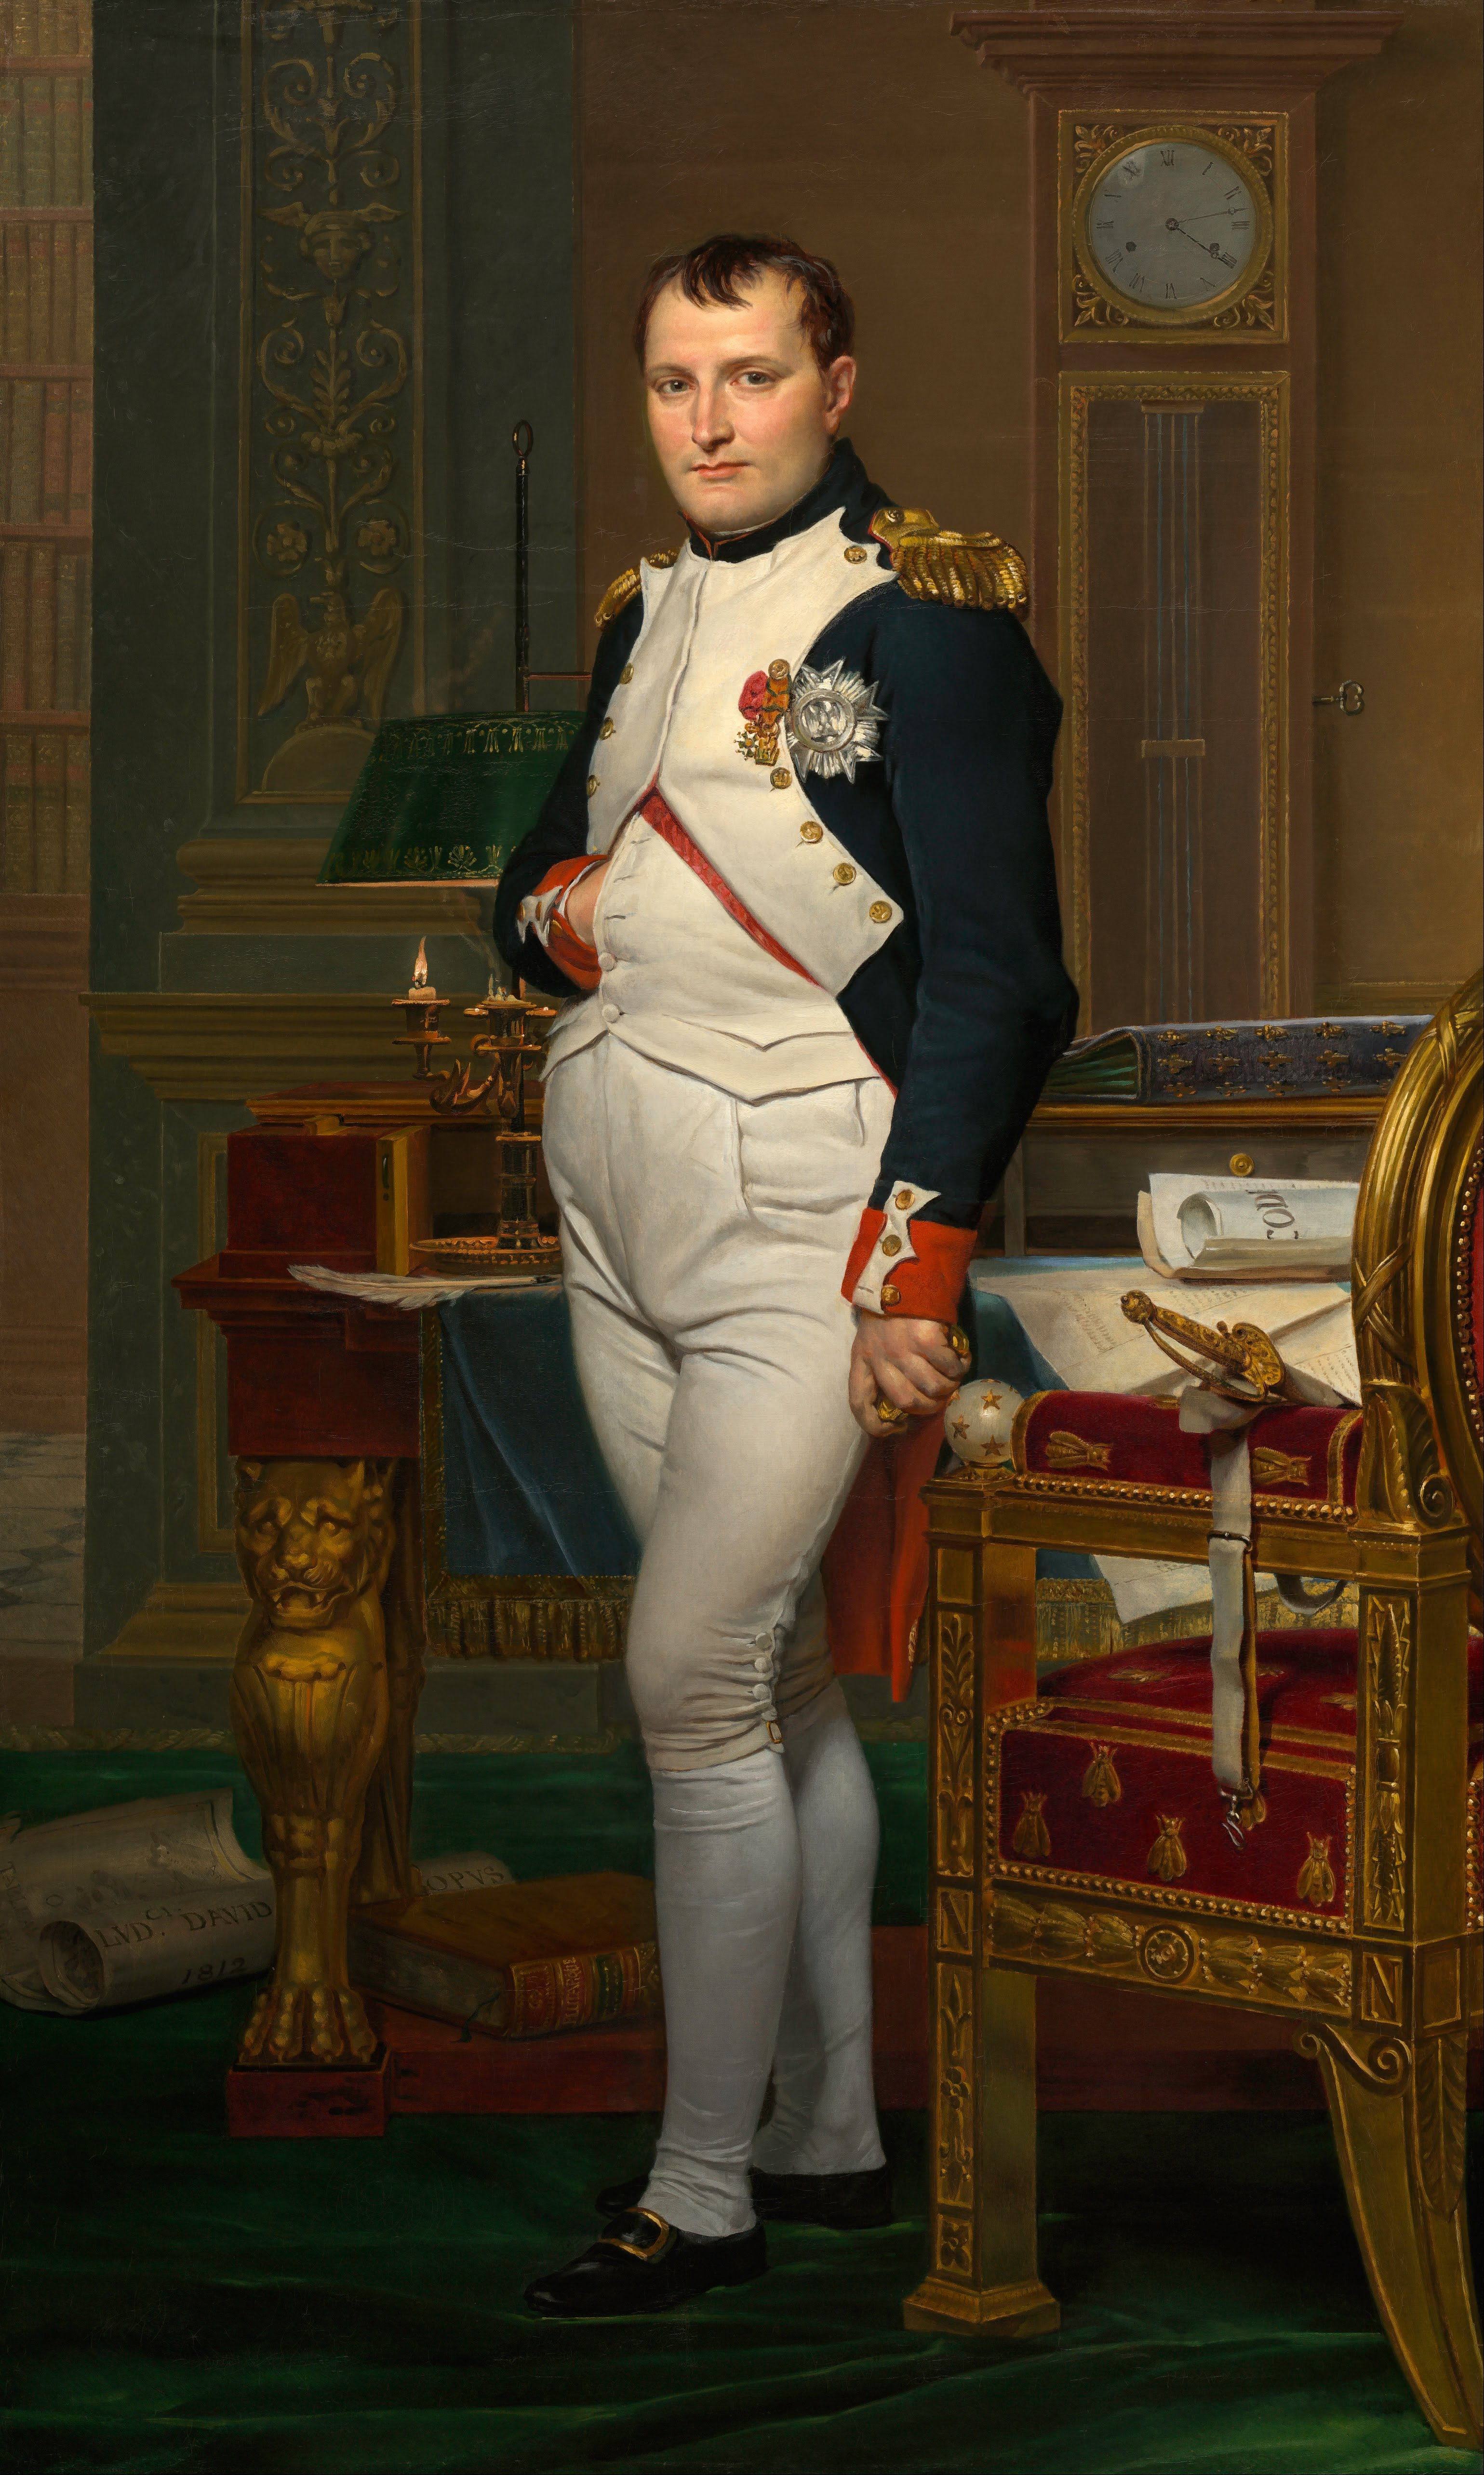  Biografía de Napoleón Bonaparte